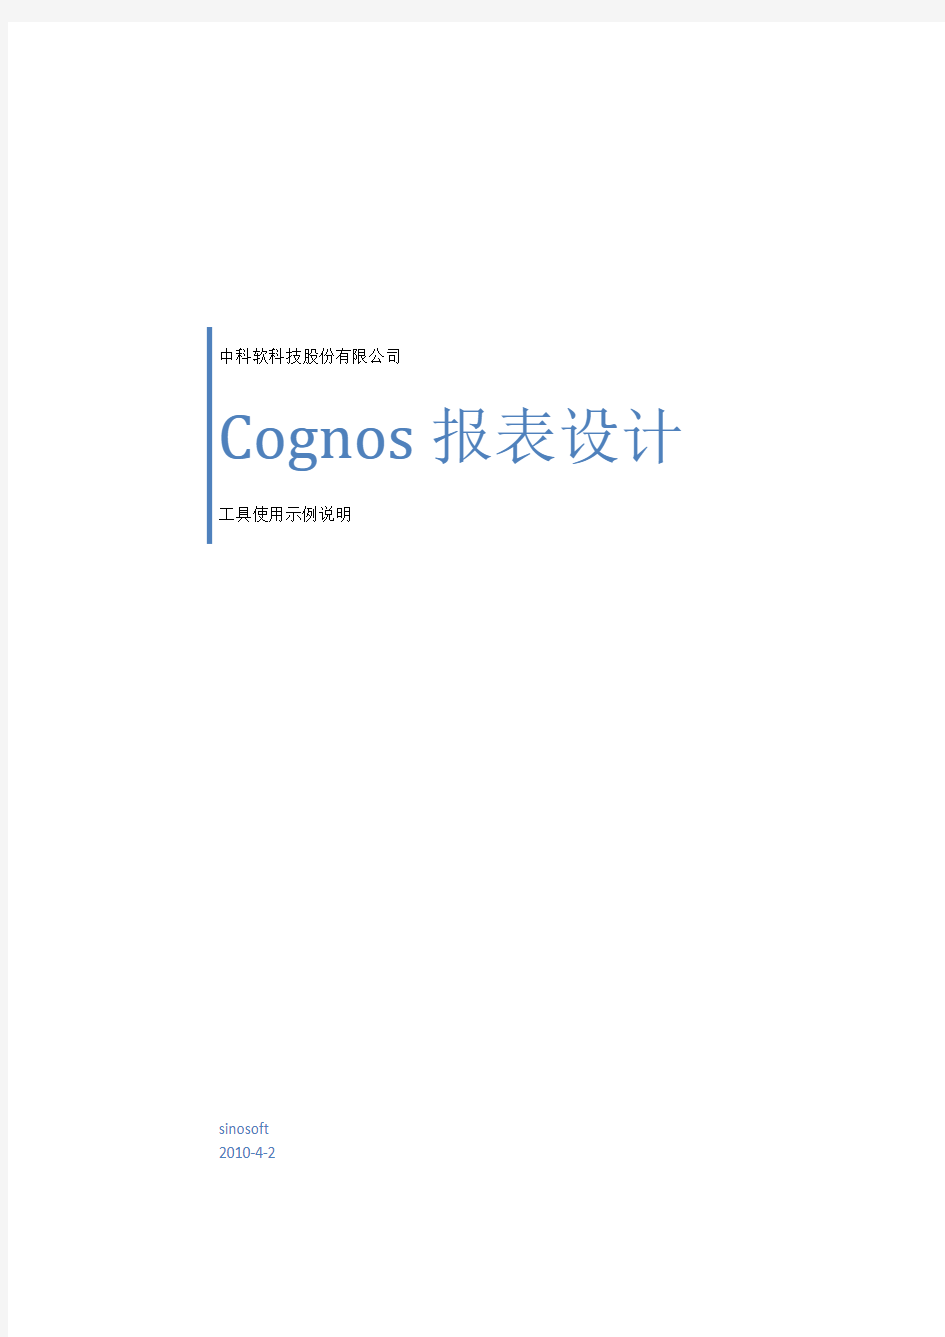 Cognos报表设计工具使用示例2.0